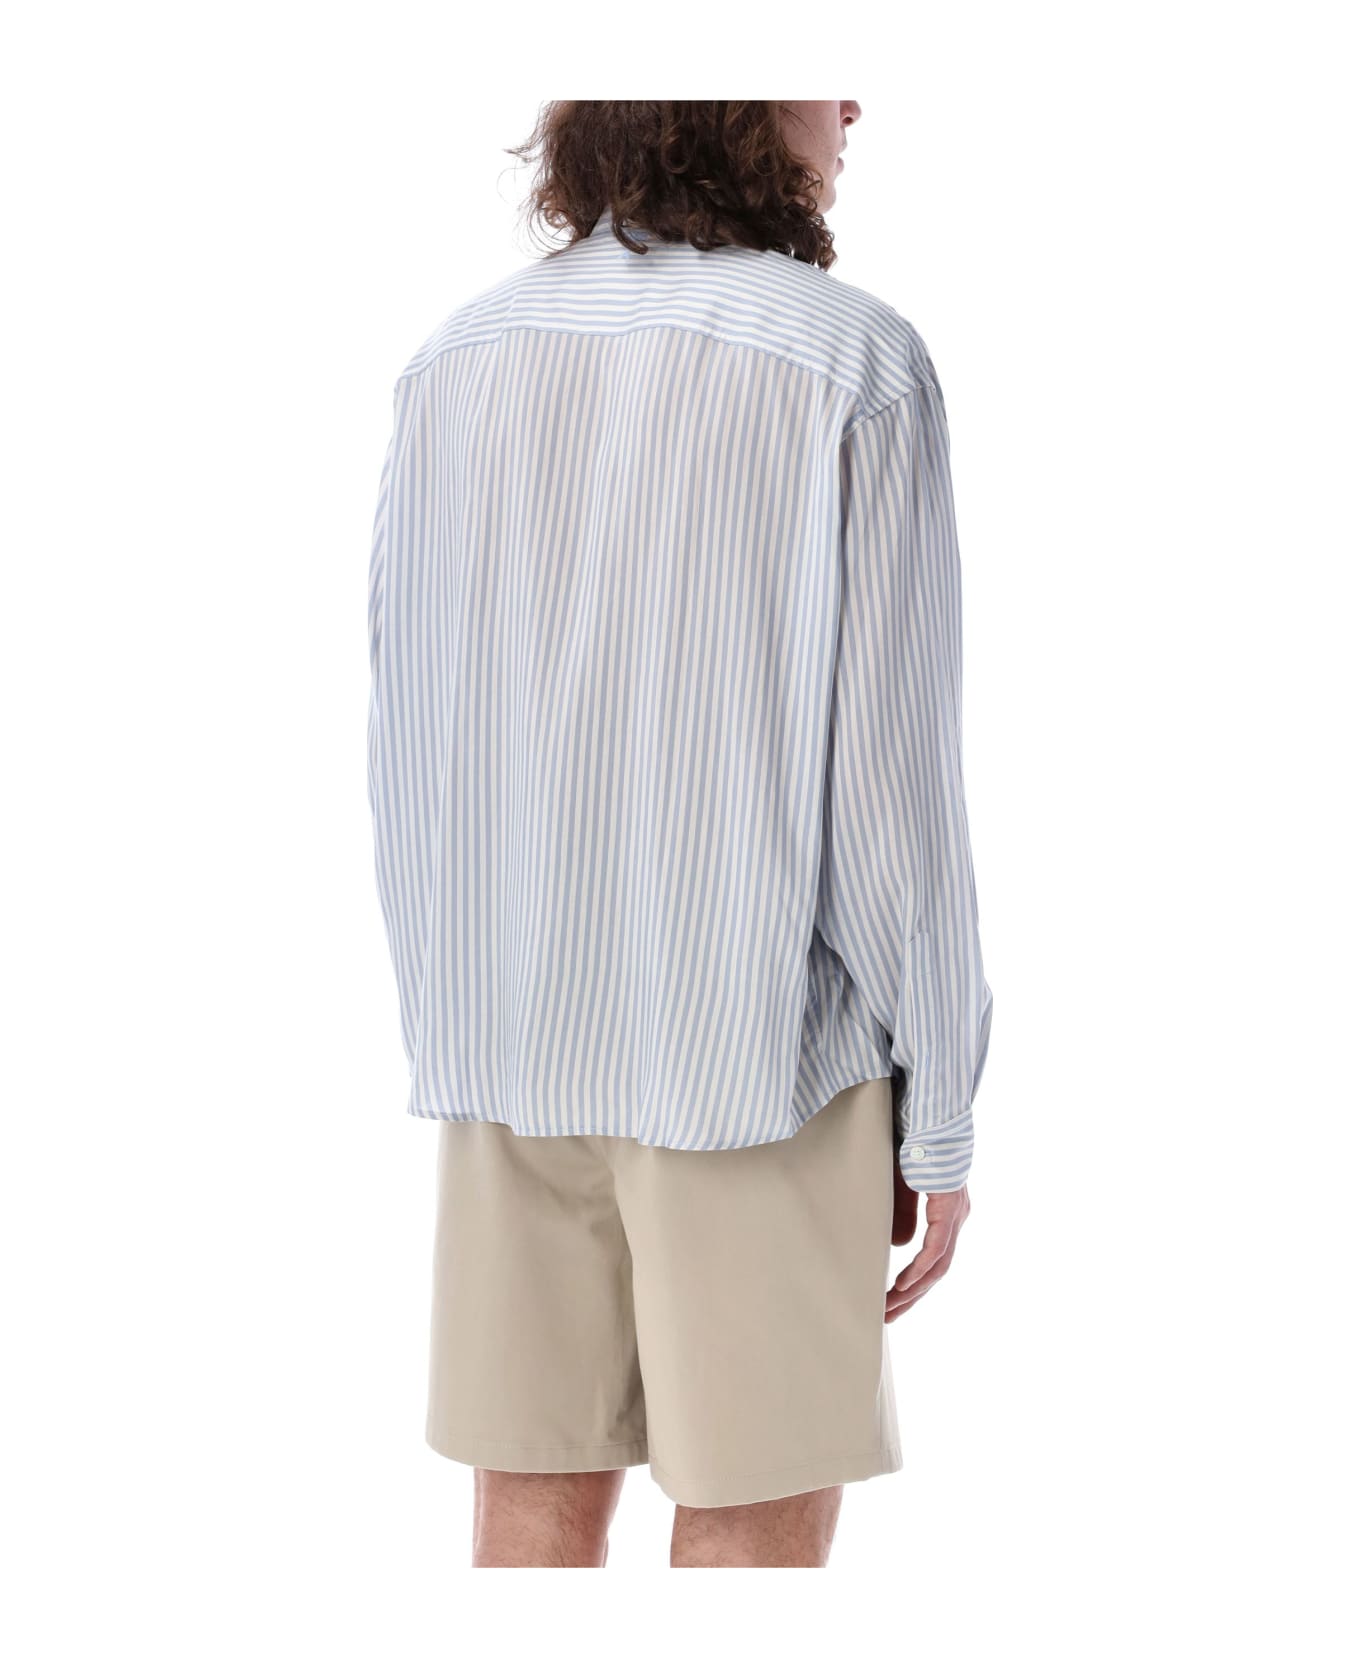 Ami Alexandre Mattiussi Striped Shirt - CHALK/CASHMERE